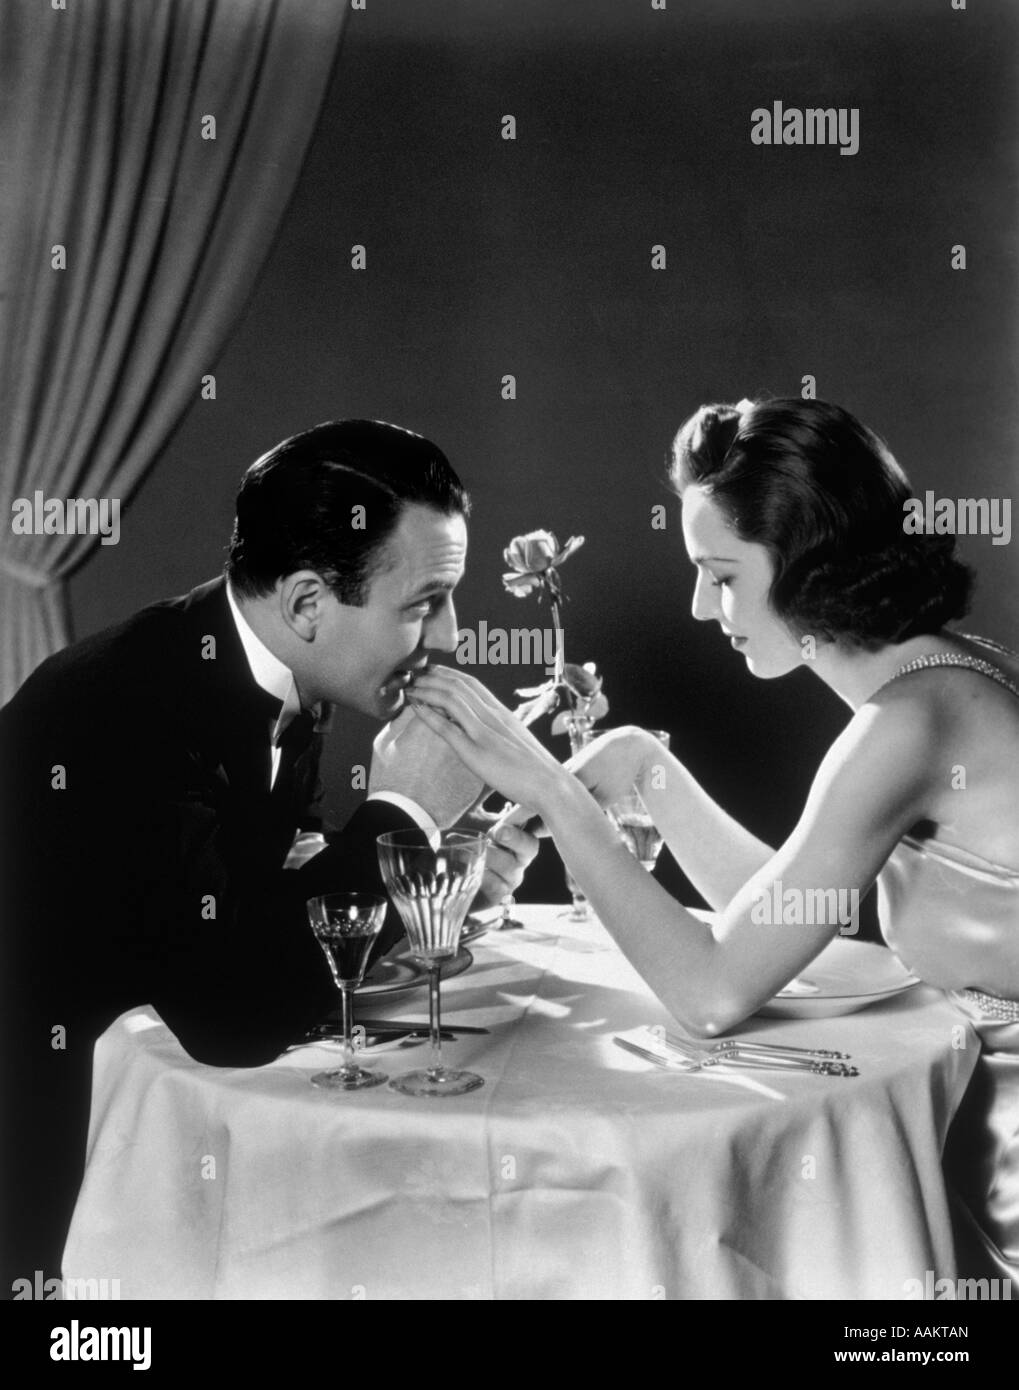 1930s coppia romantica al tavolo da pranzo uomo donna baciare la mano Foto Stock